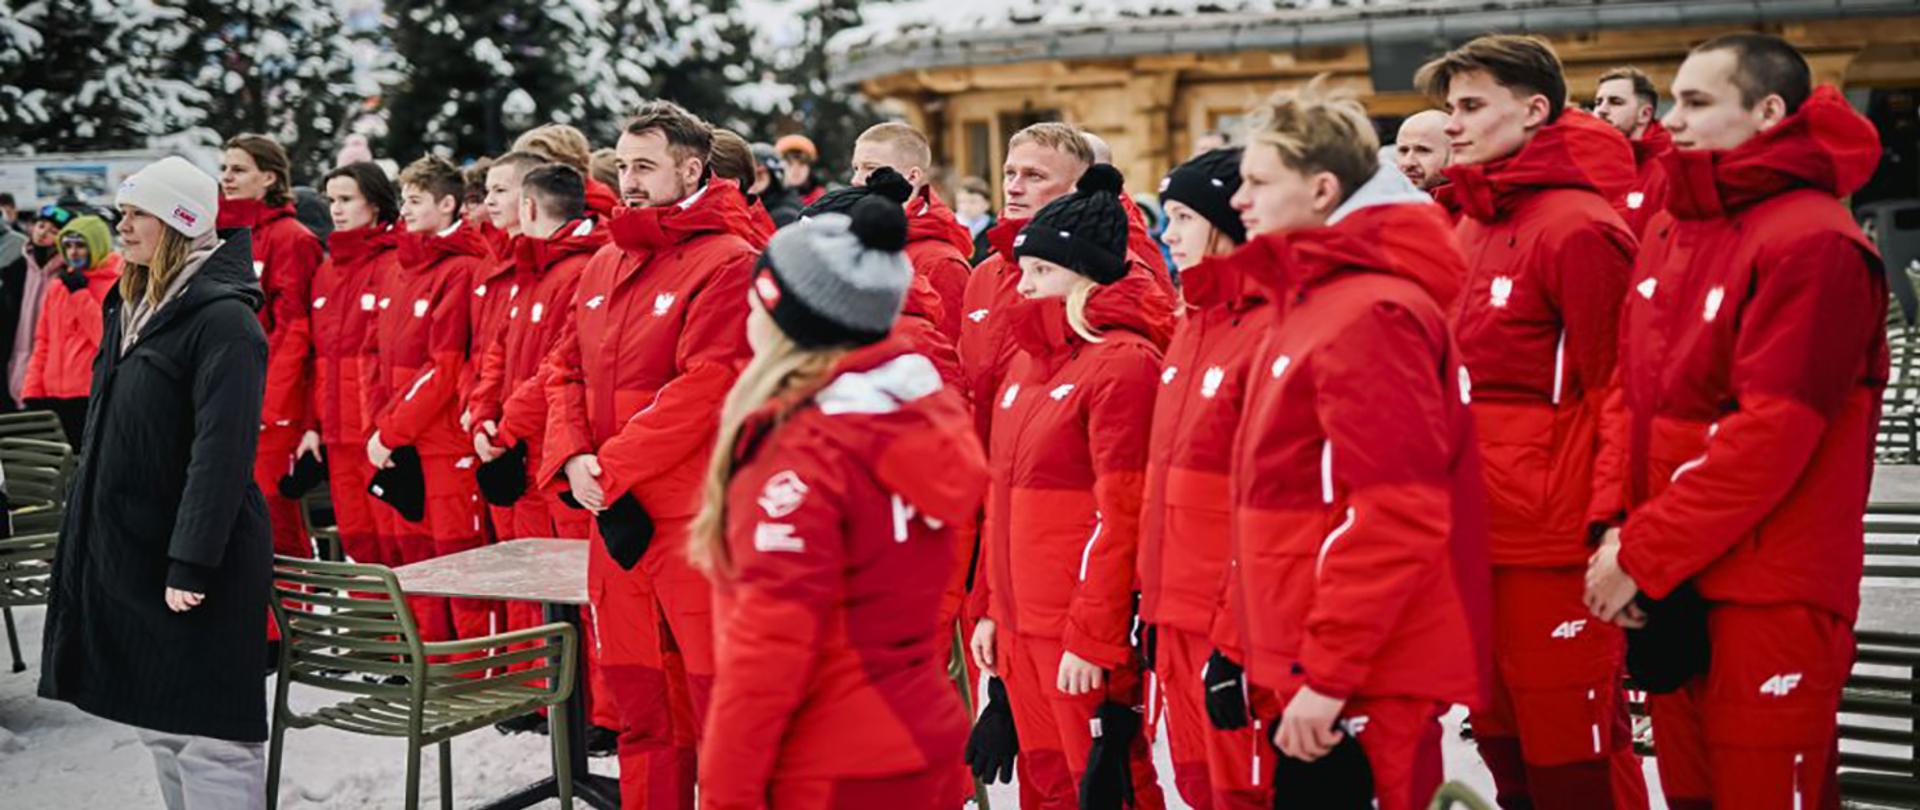 Grupa młodzieży w czerwonych strojach zimowych w zimowej aurze